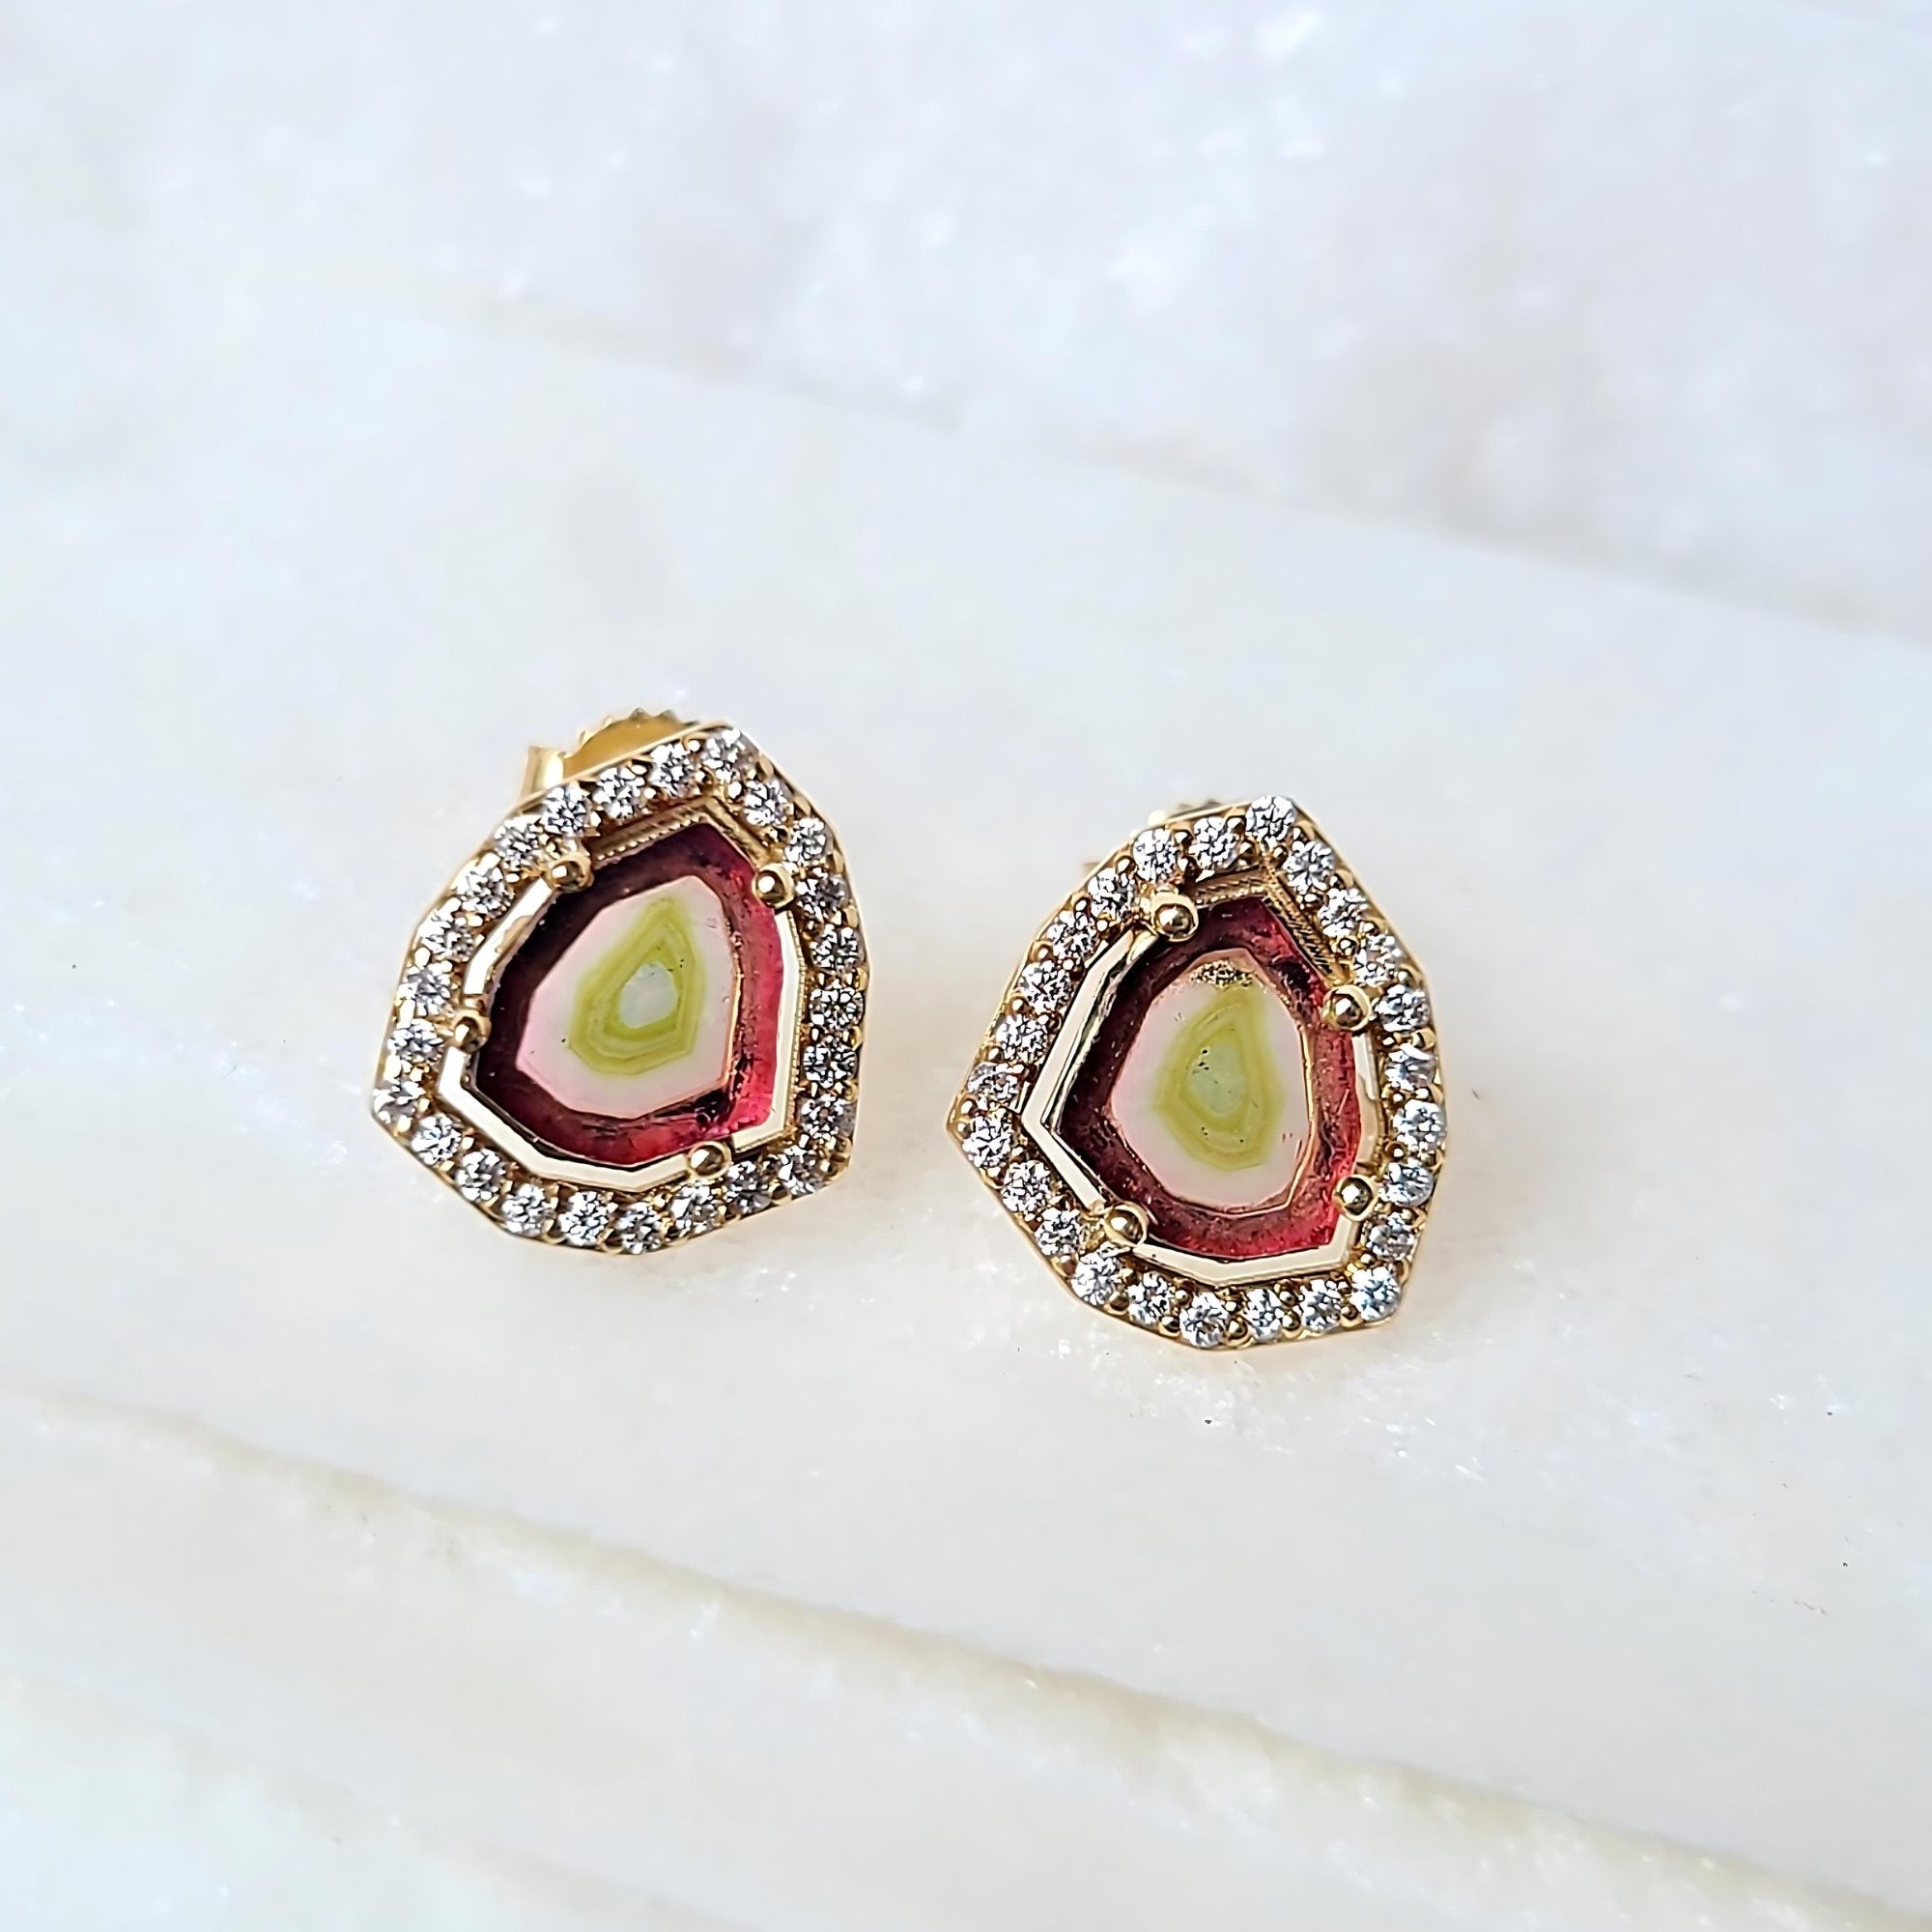 Buy Pink Tourmaline Diamond 14k Gold Halo Stud Earrings Online